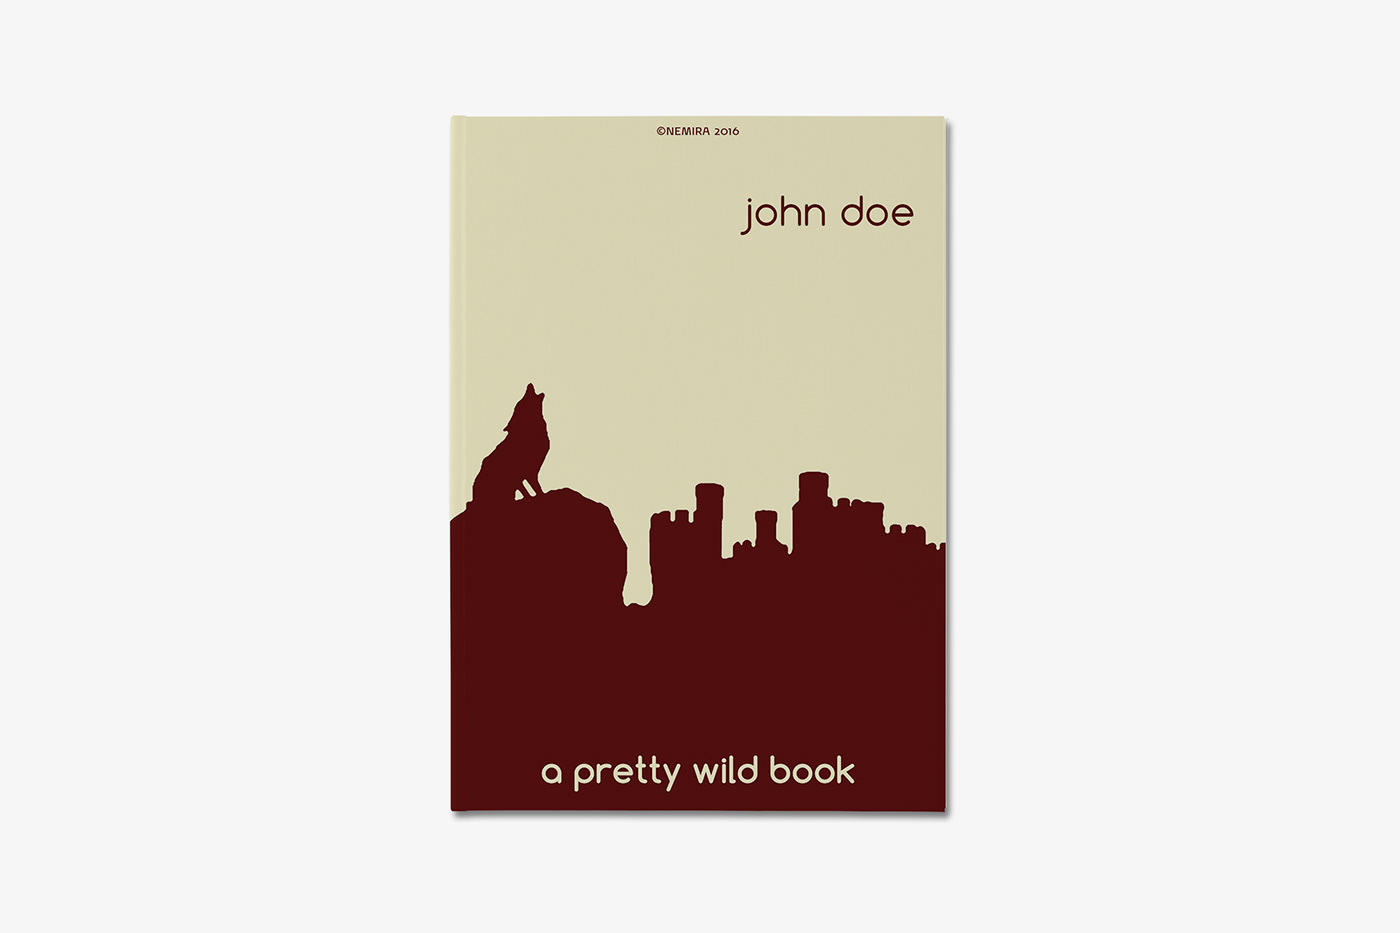 book cover design aprettywildbook pretty wild wolf